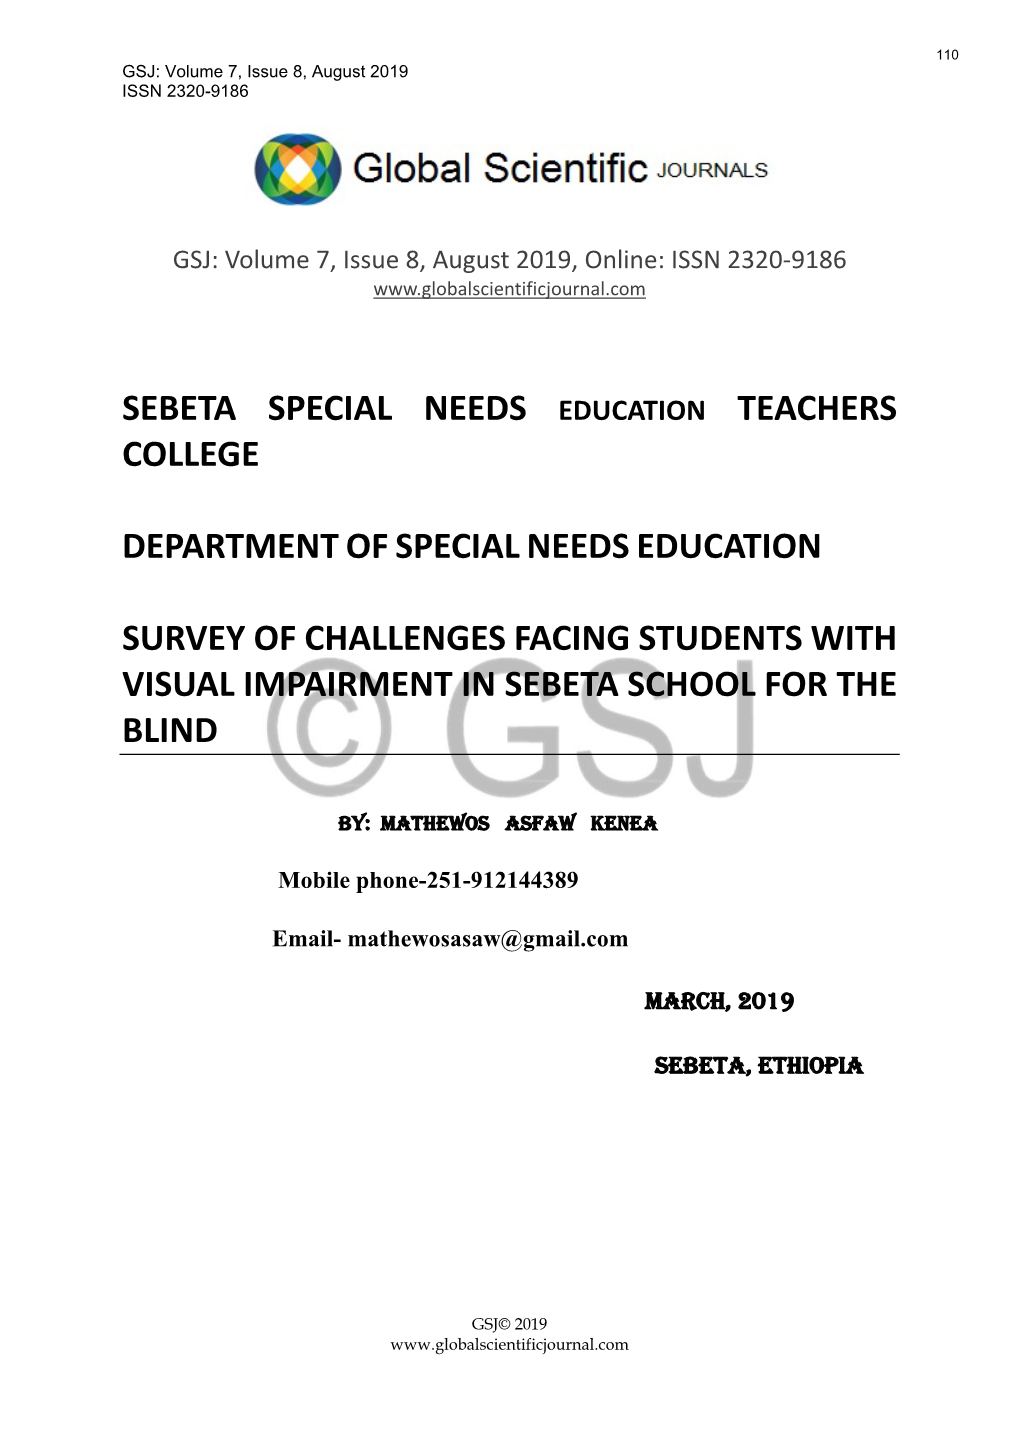 Sebeta Special Needs College